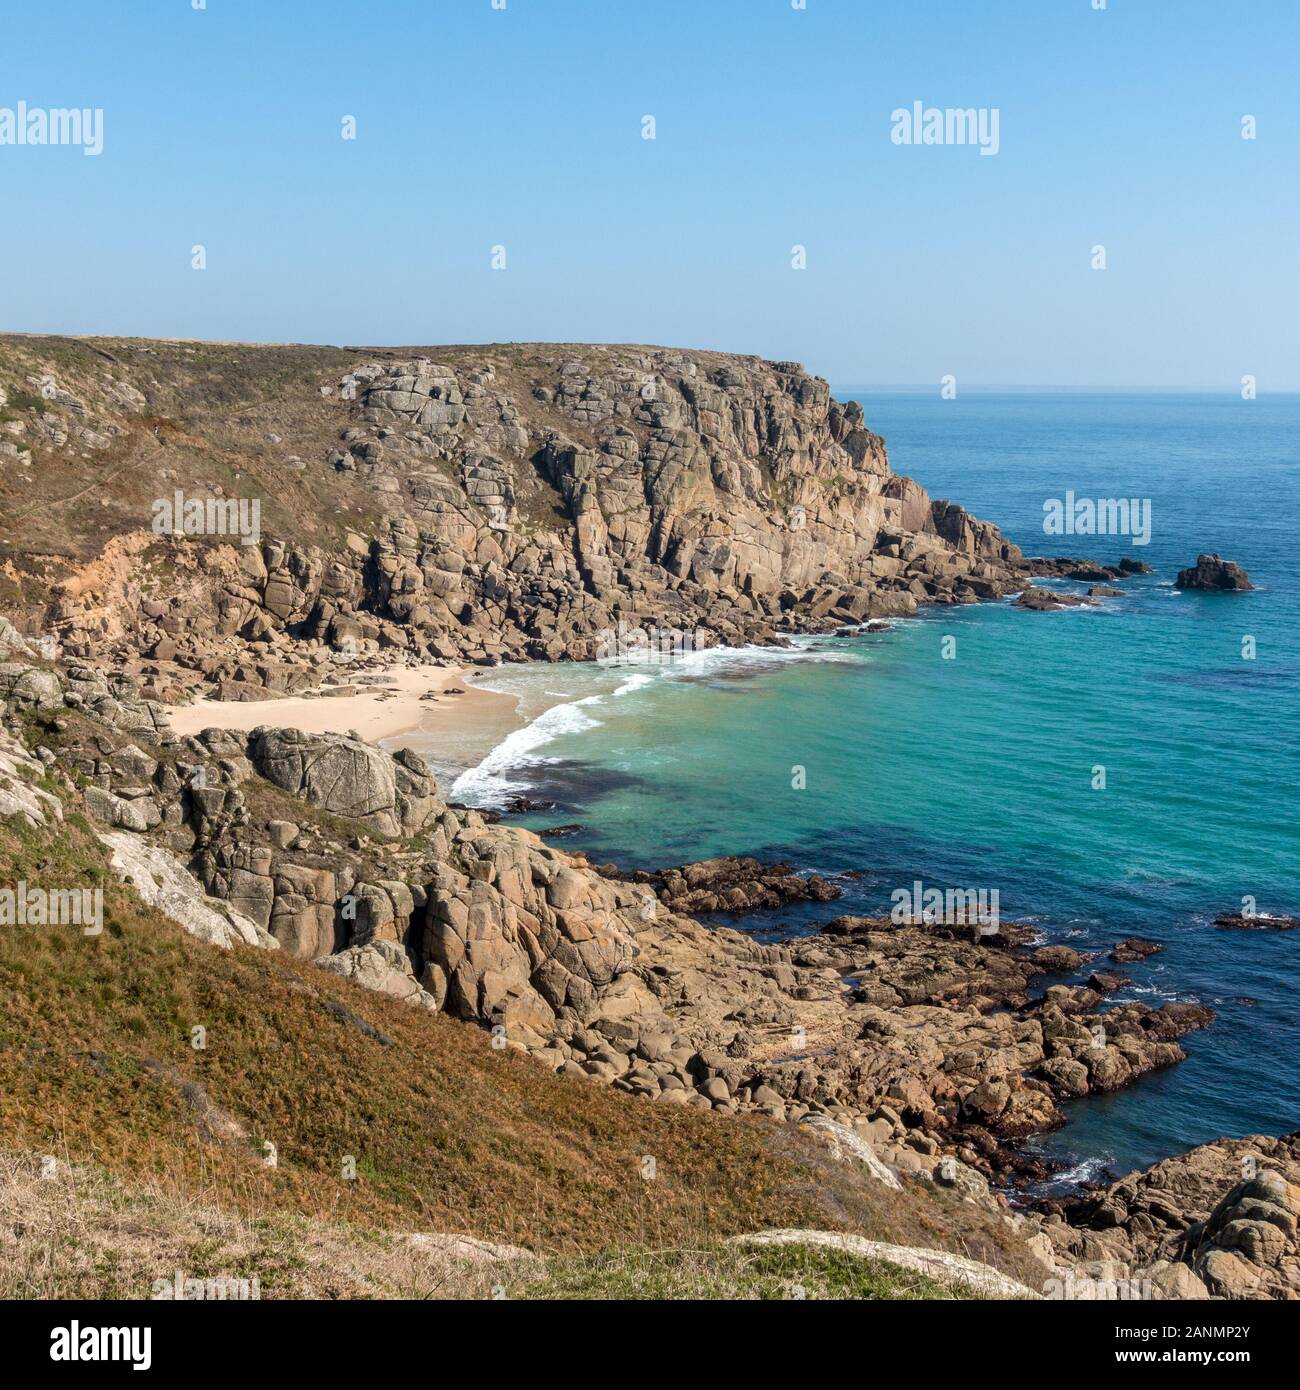 Falaises de mer, côte cornique et plage de Porthleven vue du sentier côtier sur une journée de fin d'été en septembre avec ciel bleu, Cornouailles, Angleterre, Royaume-Uni Banque D'Images